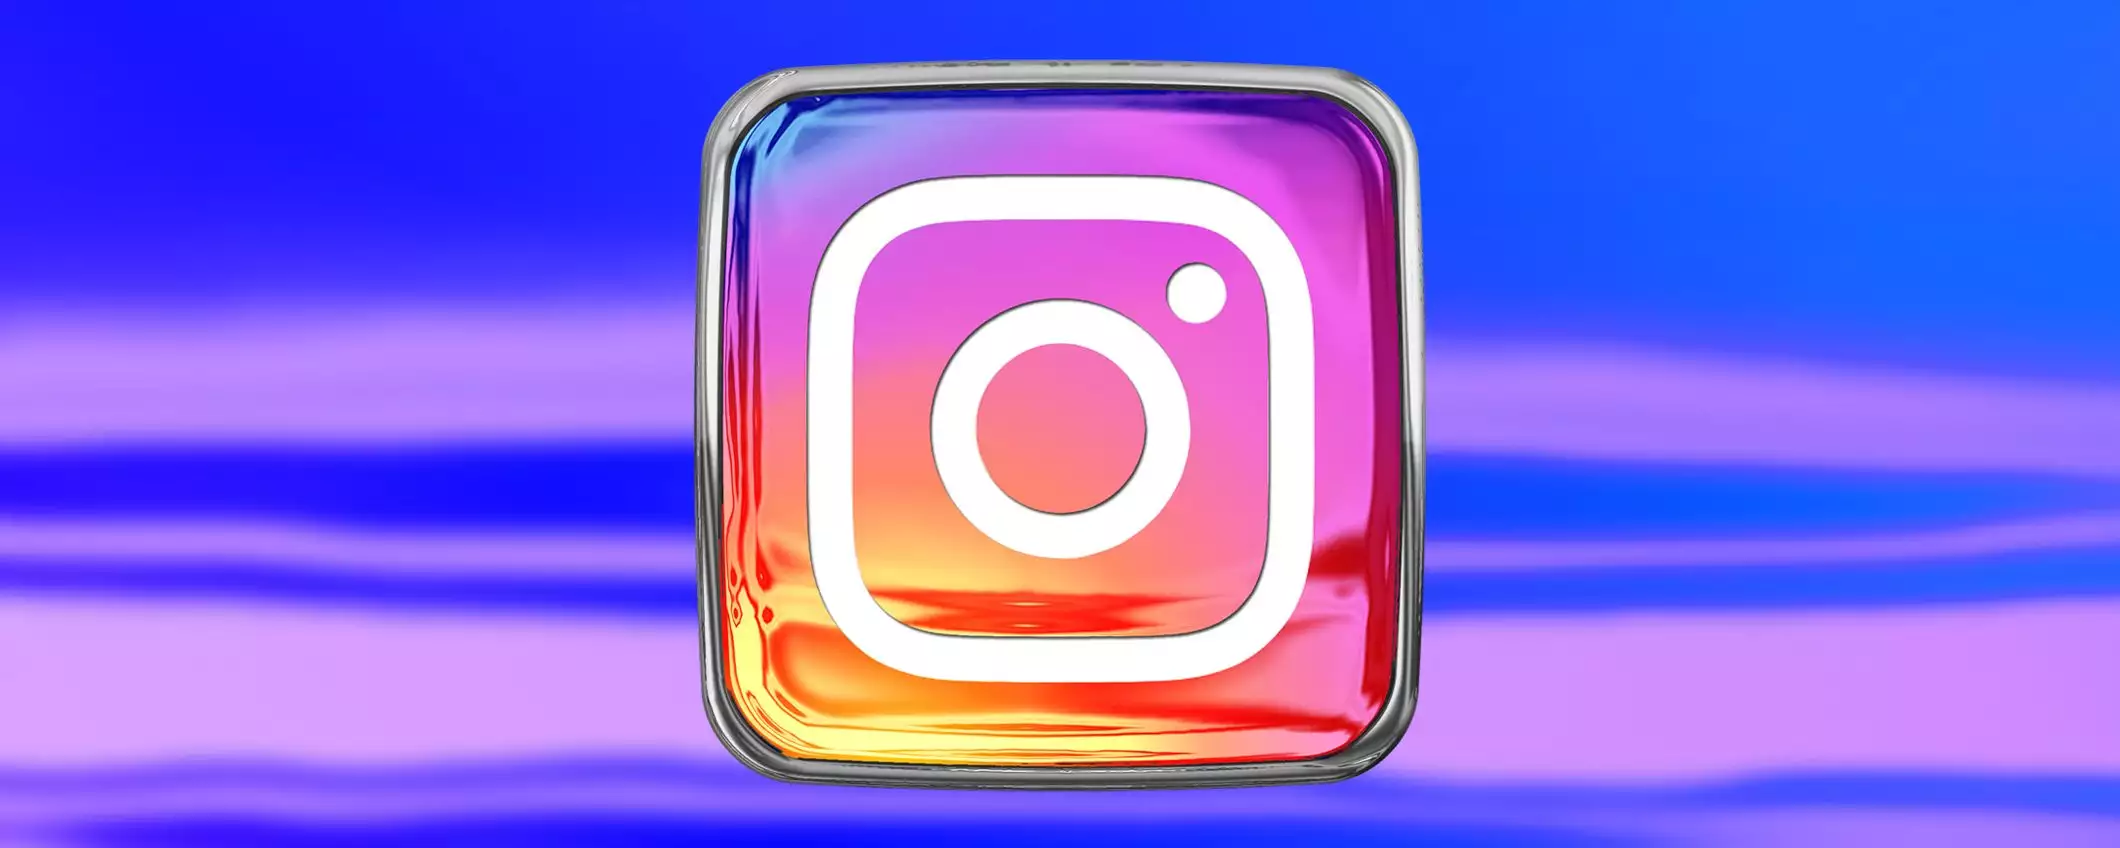 Instagram potrebbe permettere di motivare i follow